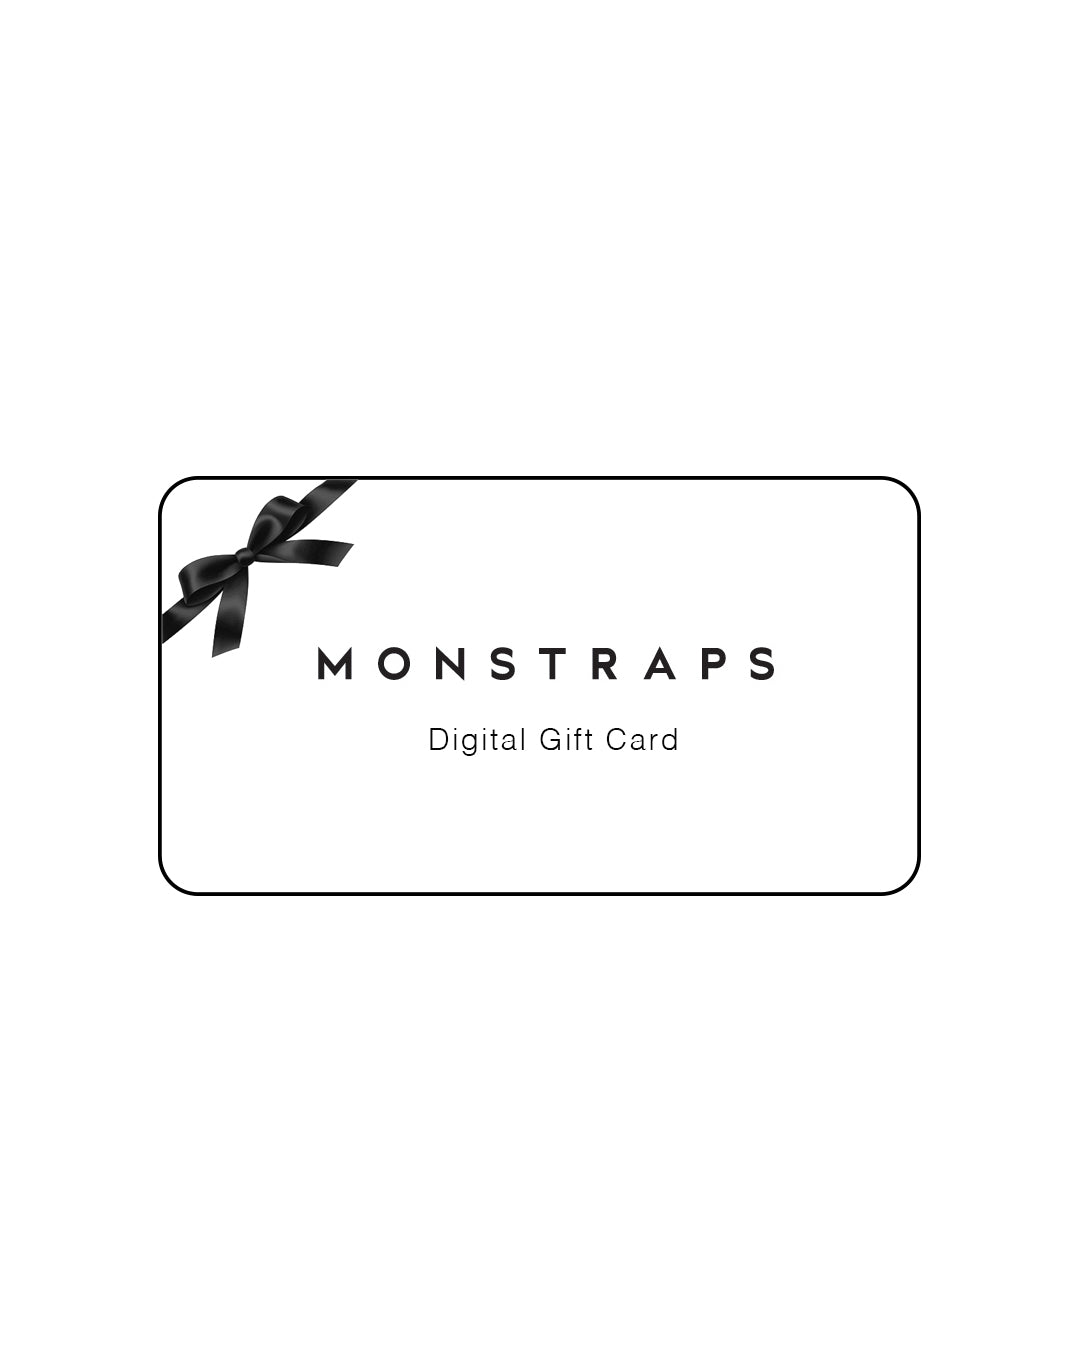 MONSTRAPS Digital Gift Card